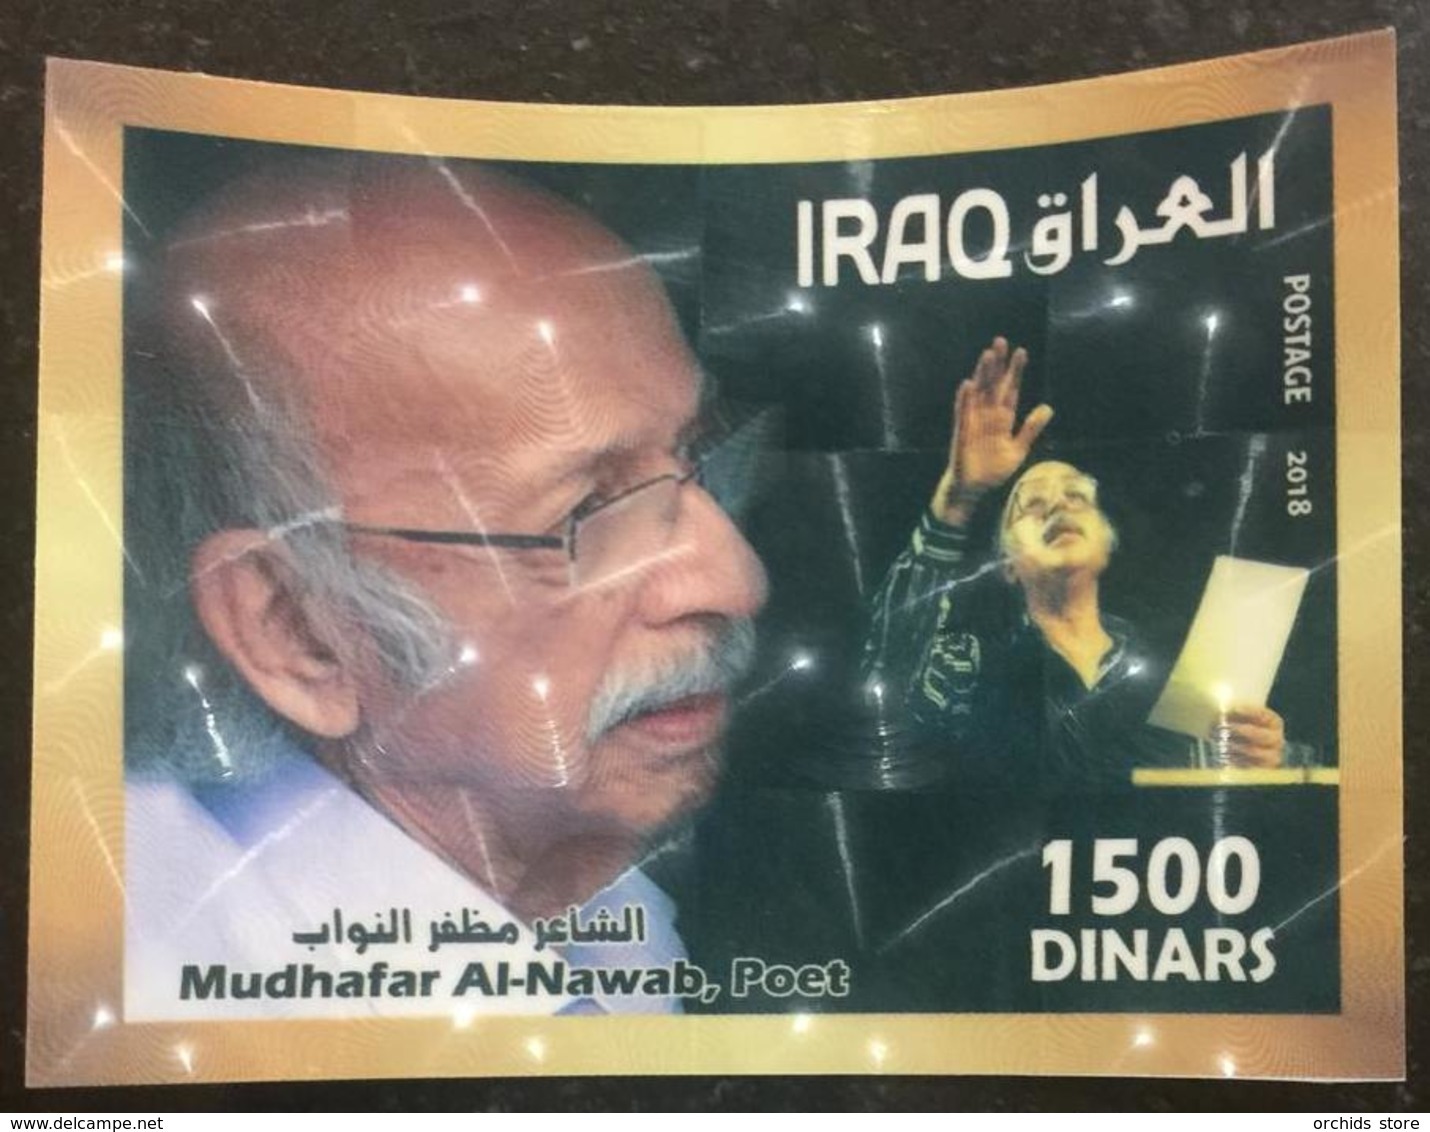 Iraq 2018 MNH Souvenir Sheet S/S - MNH - Famous Poet Mudhafar Al-Nawab - Iraq